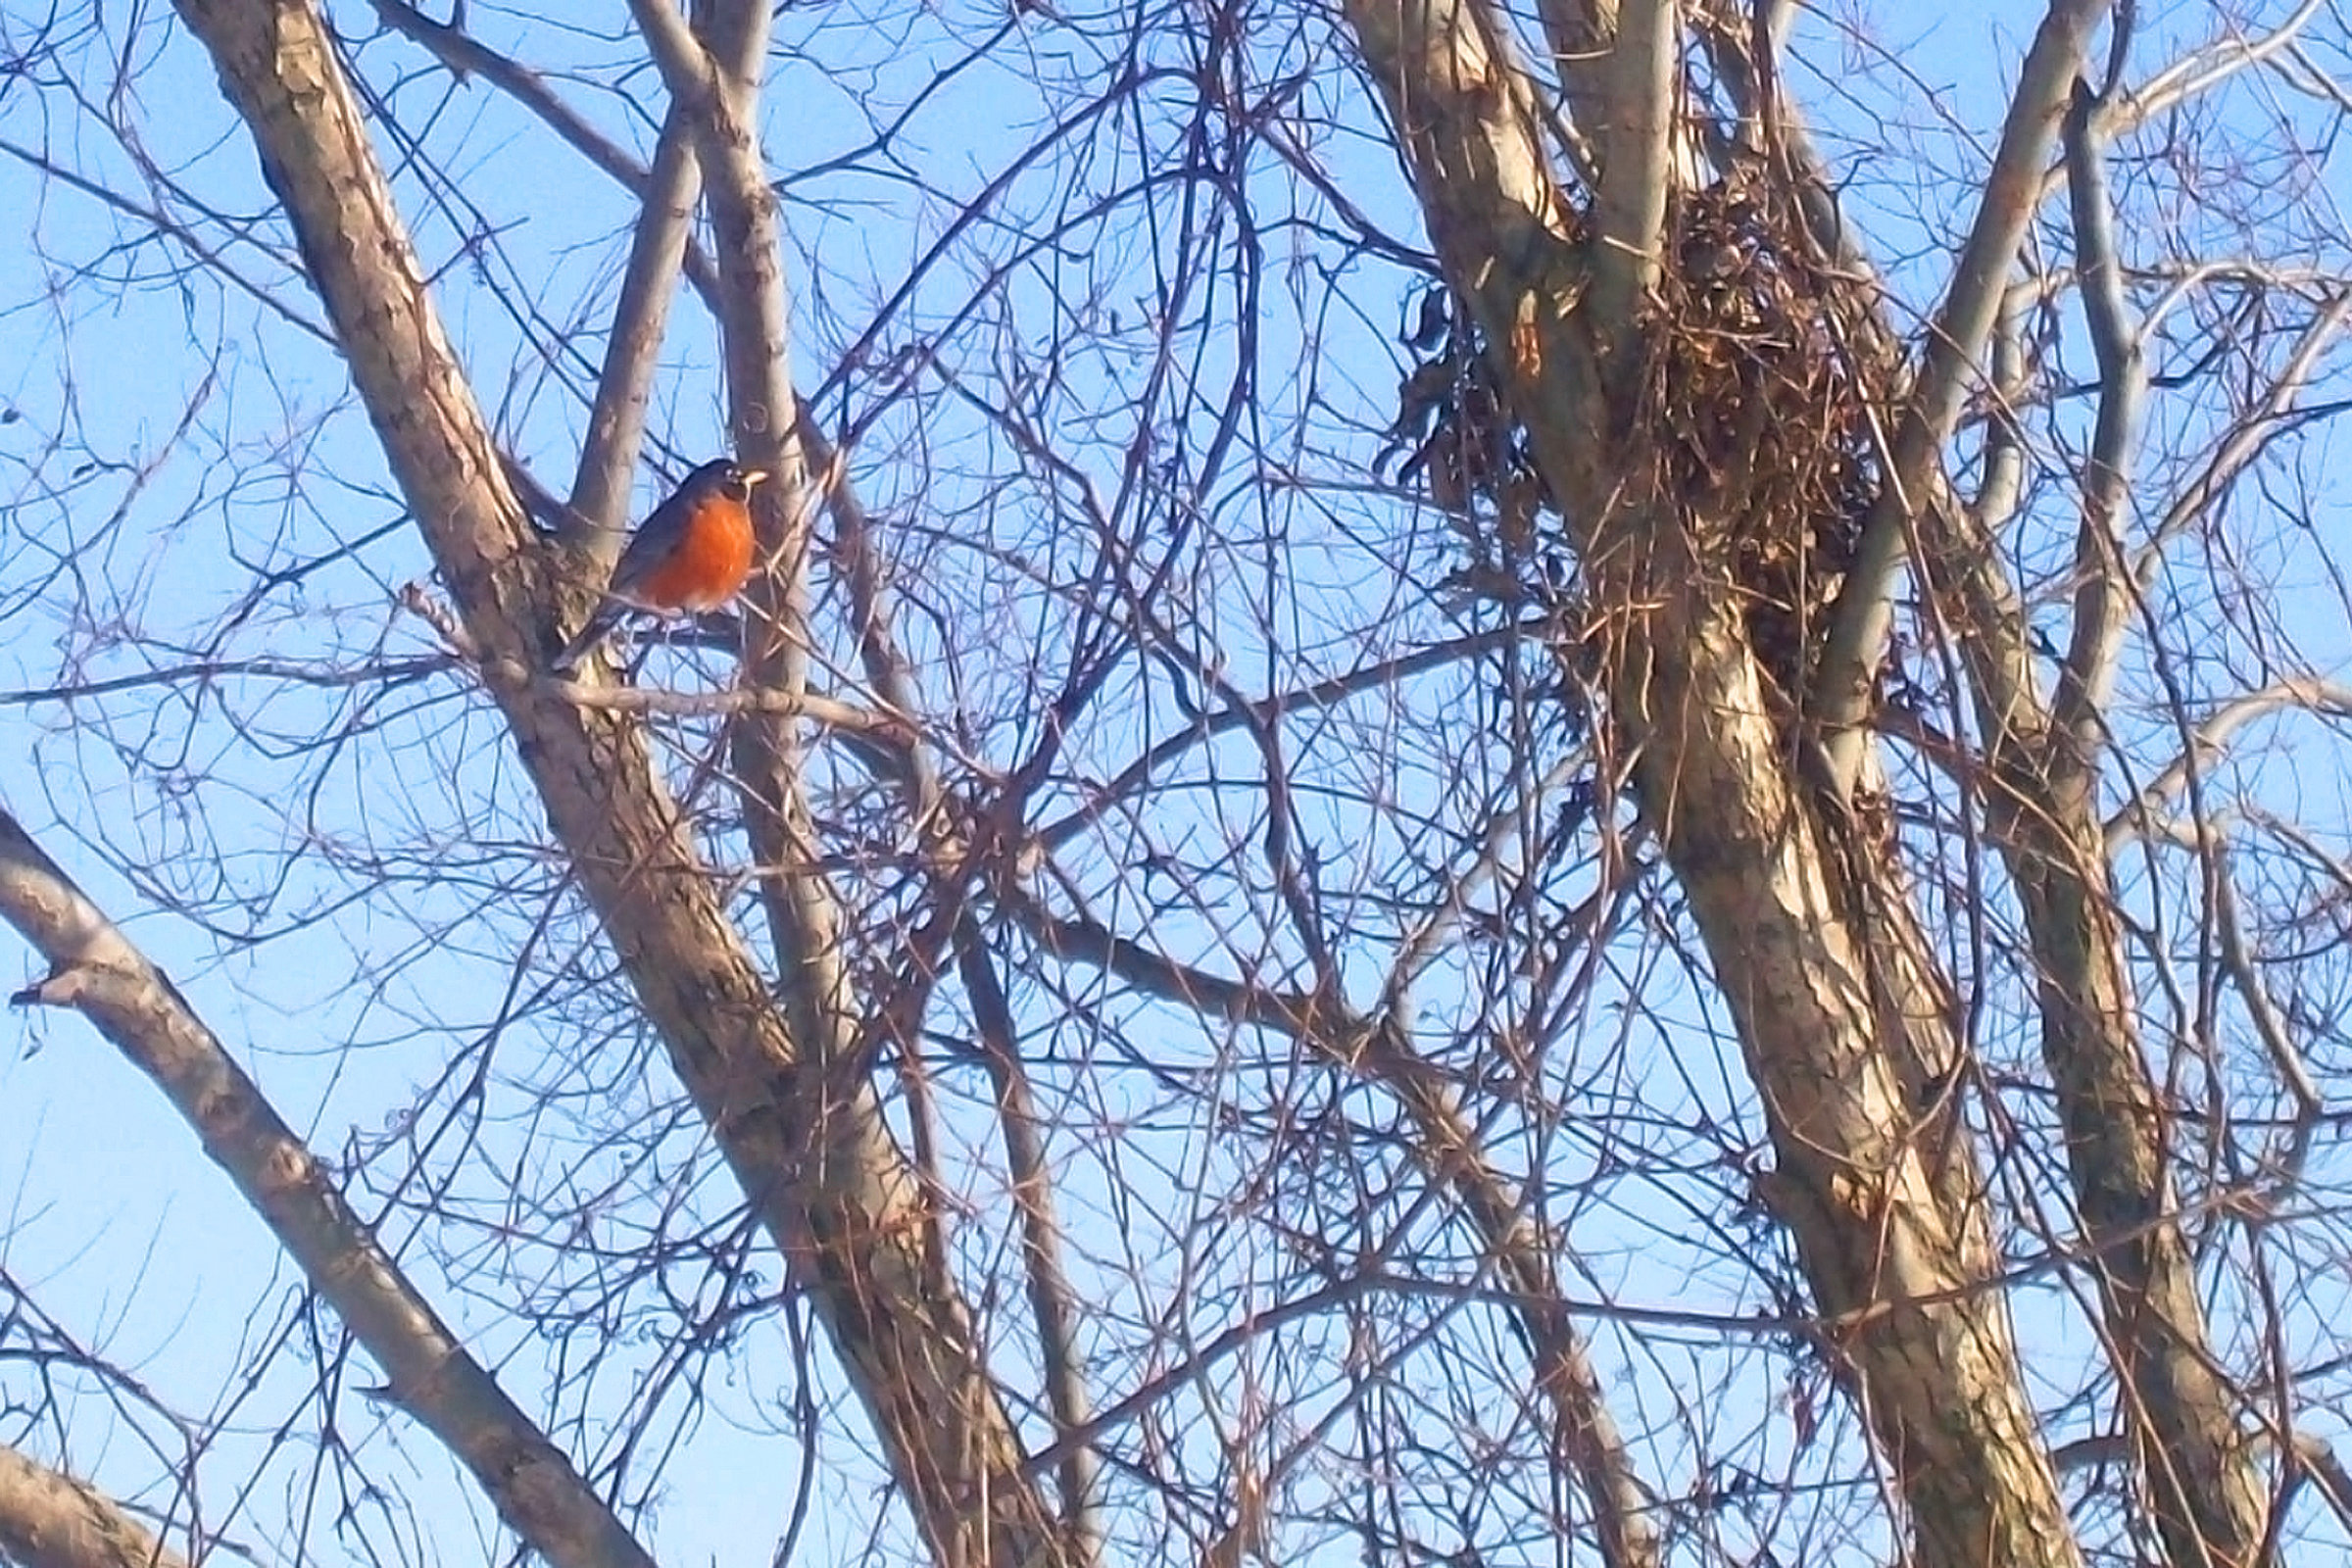 February robin